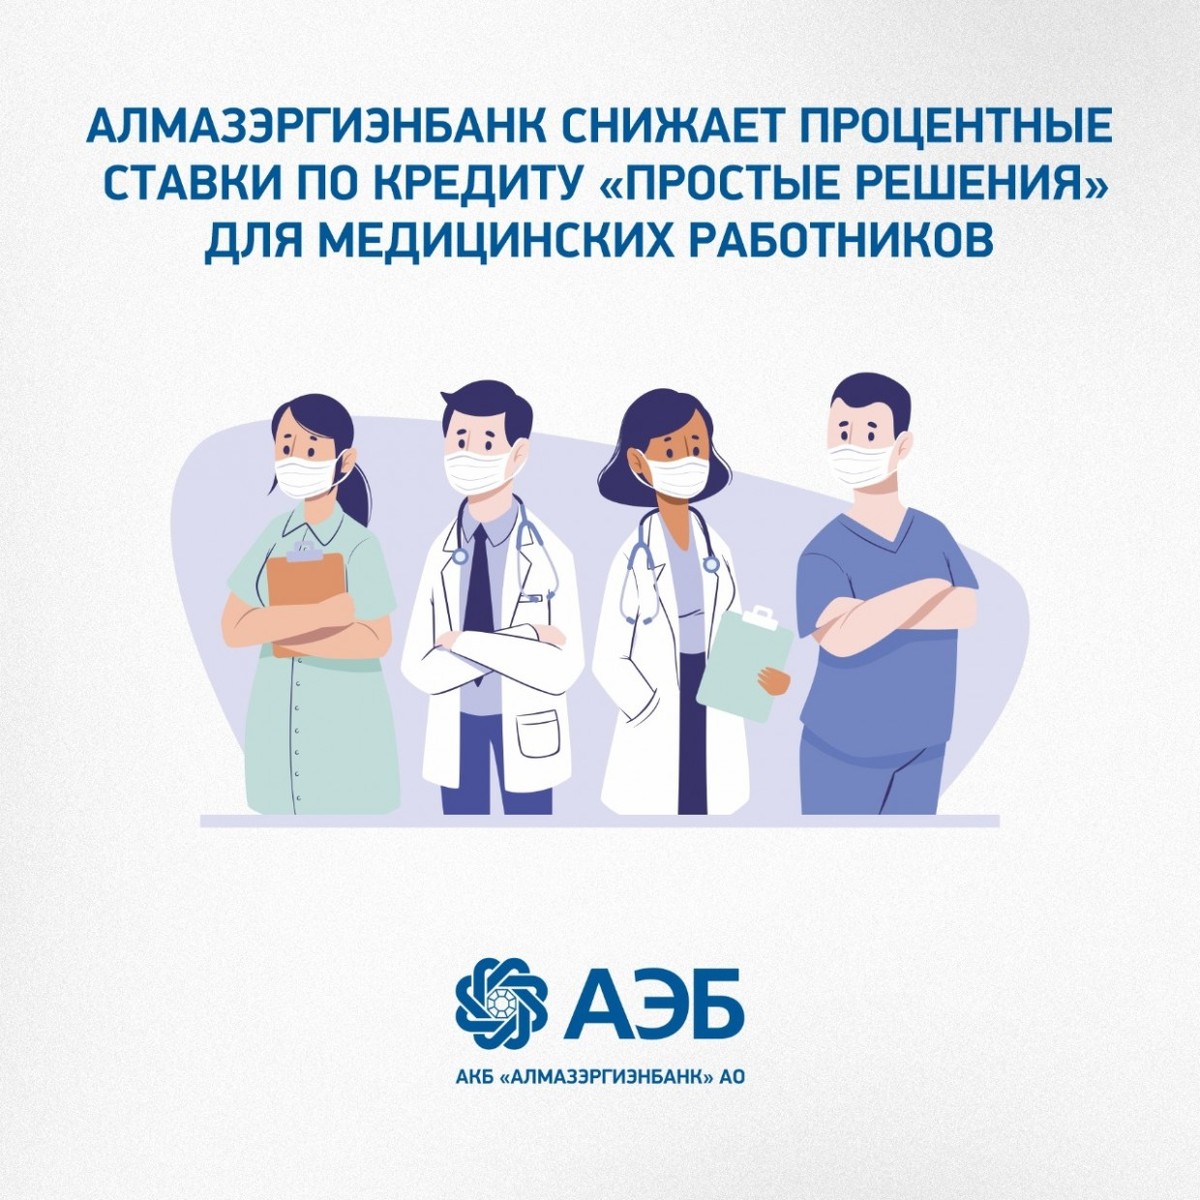 АЭБ снижает процентные ставки по кредиту «Простые решения» для медицинских работников